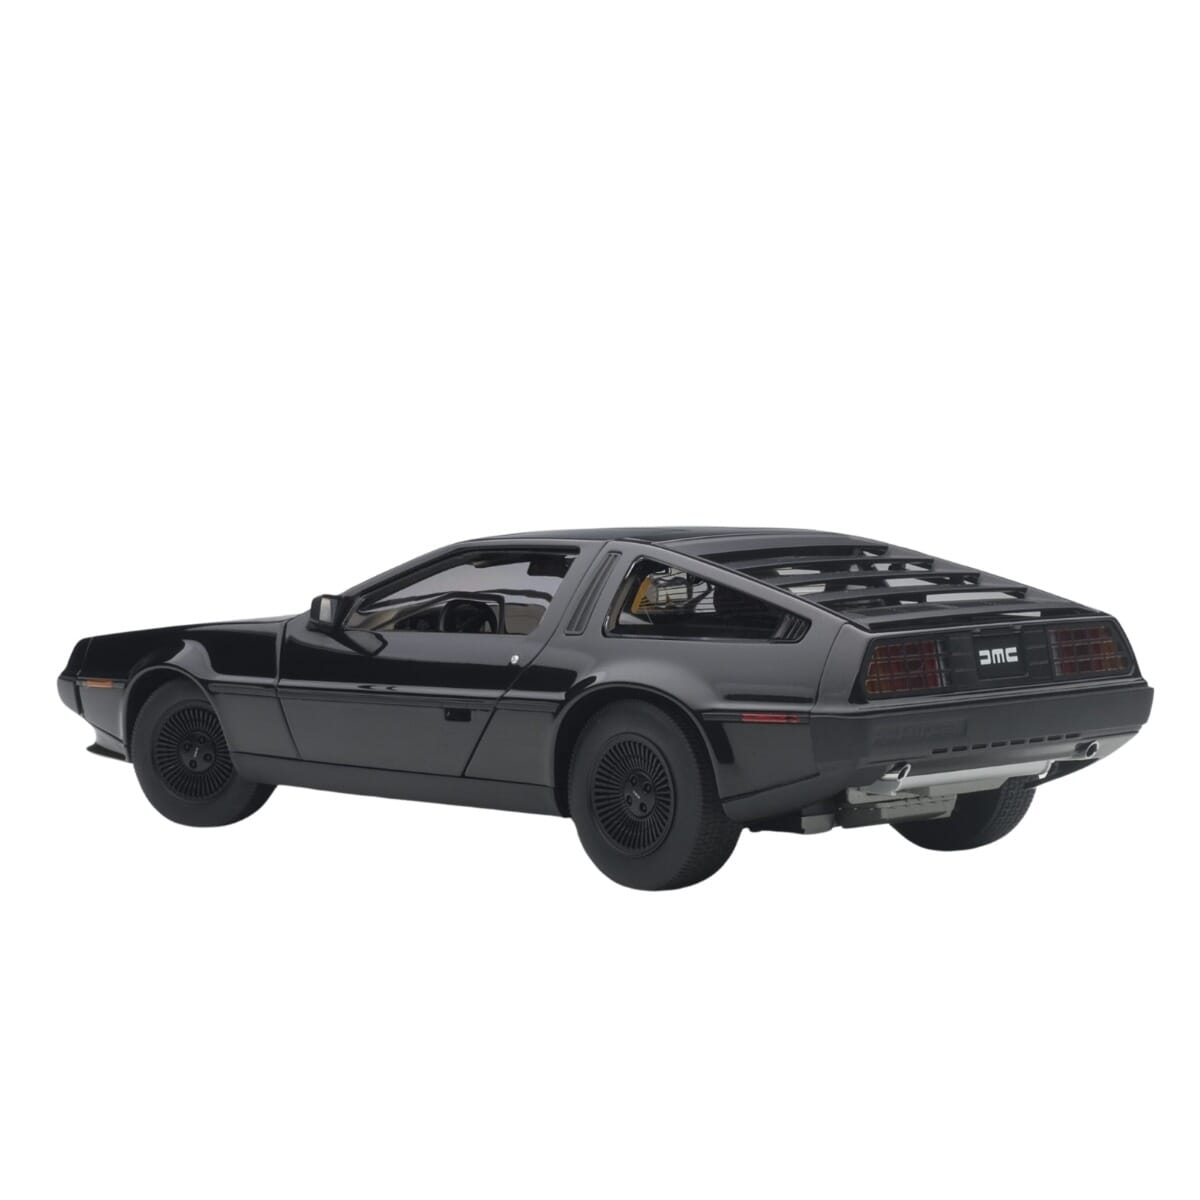 DeLorean DMC 12 Composite Model 1:18 scale Metallic Black